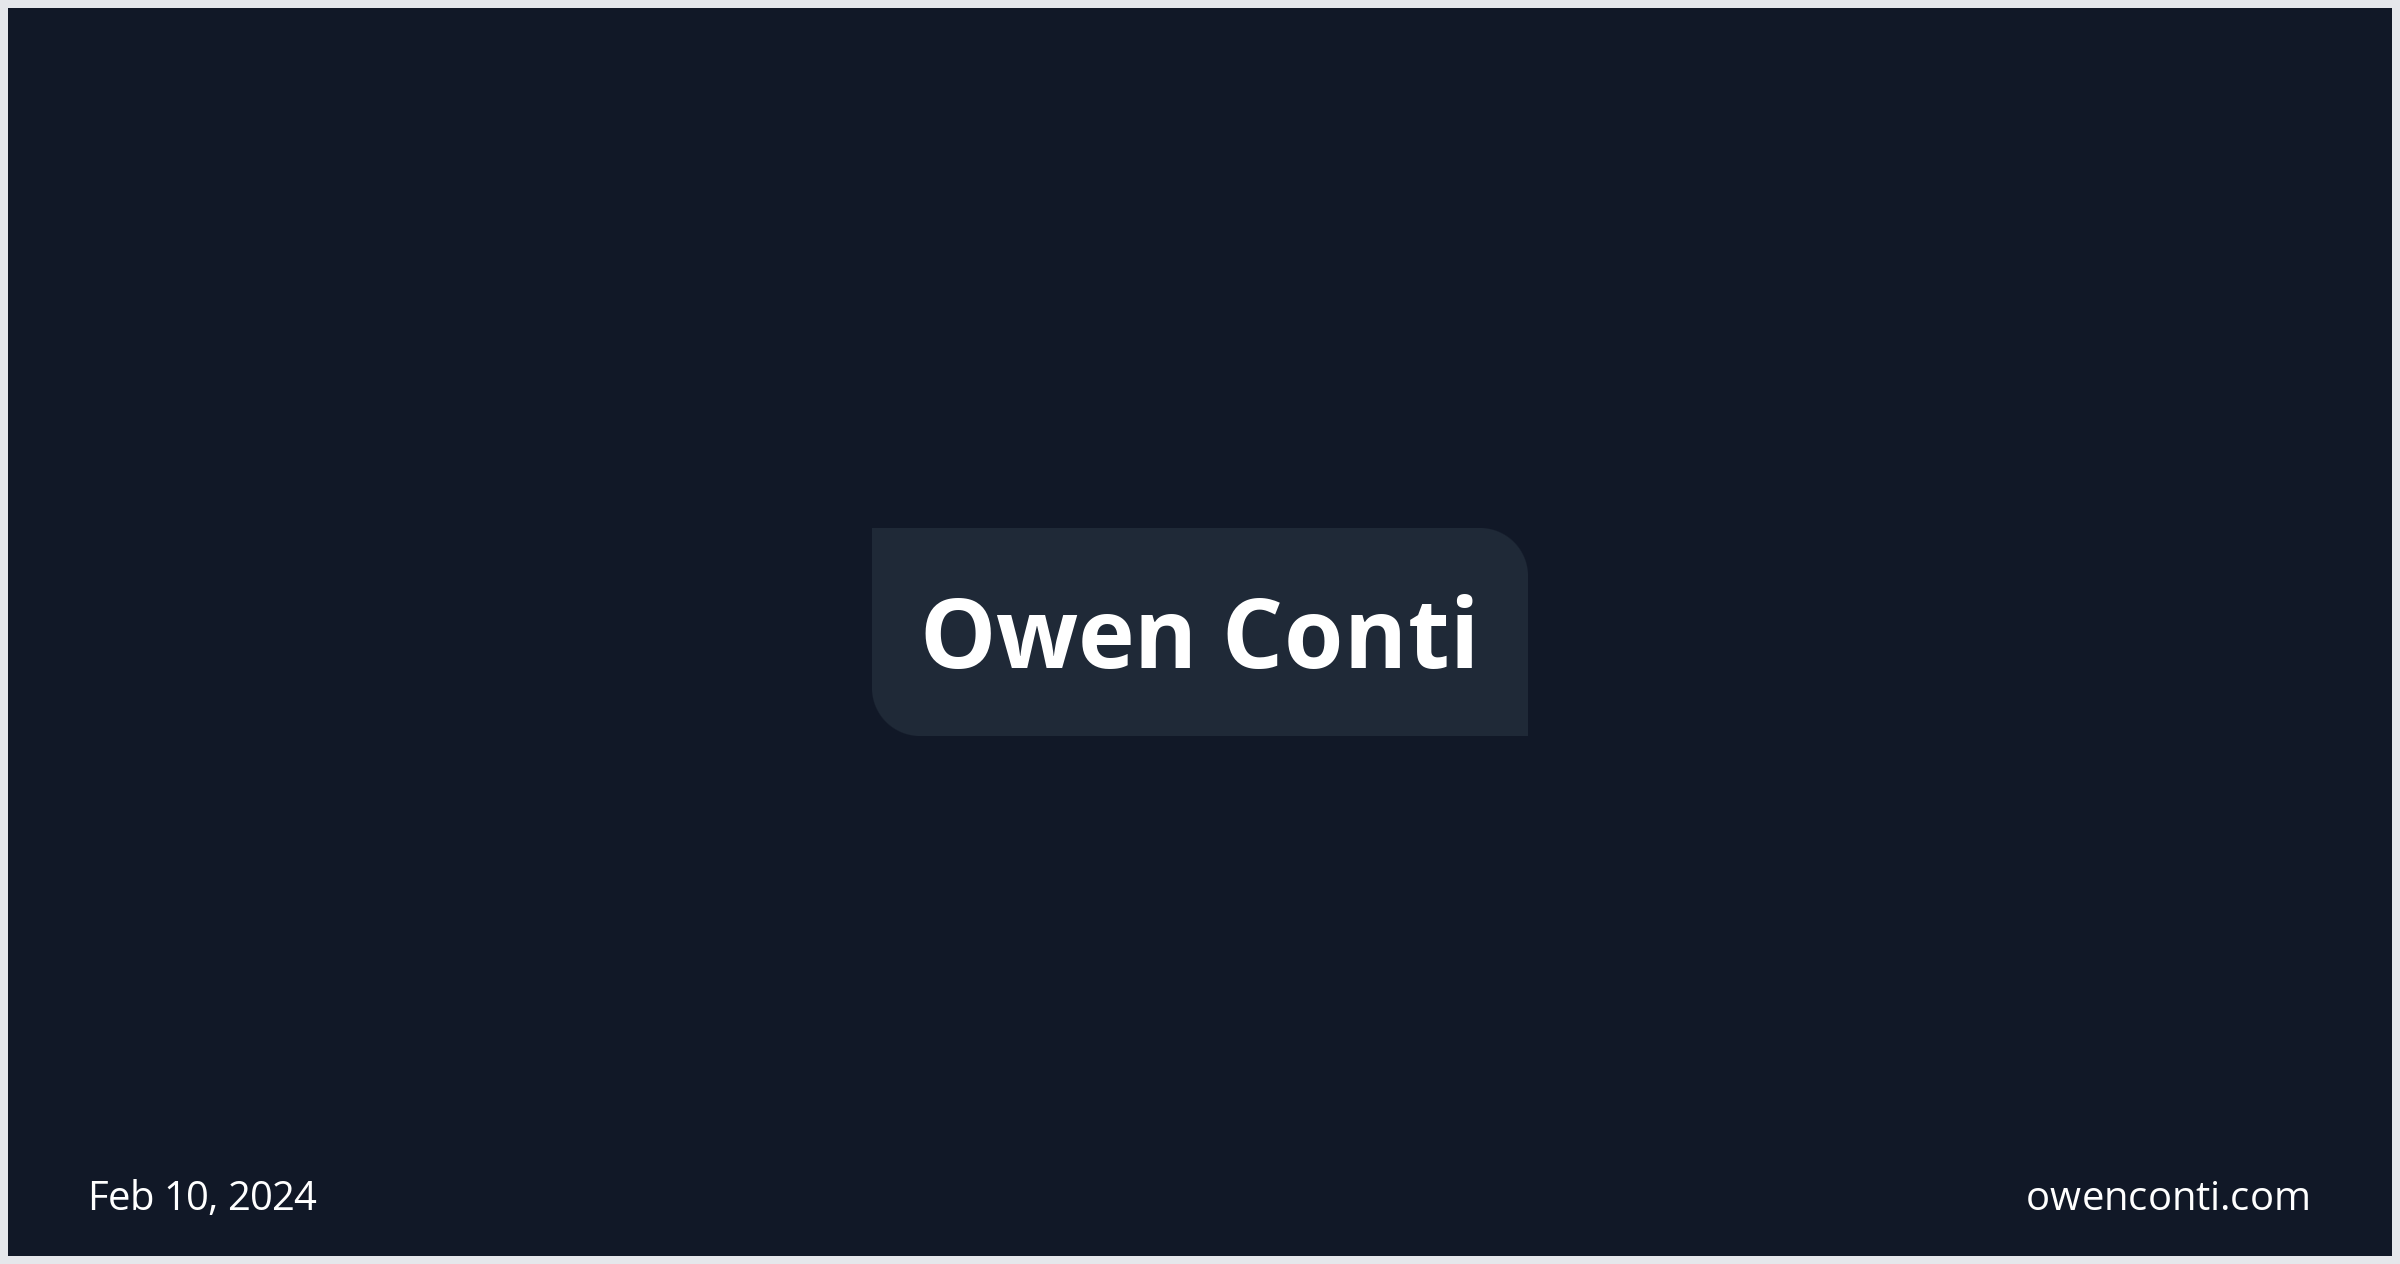 Owen Conti